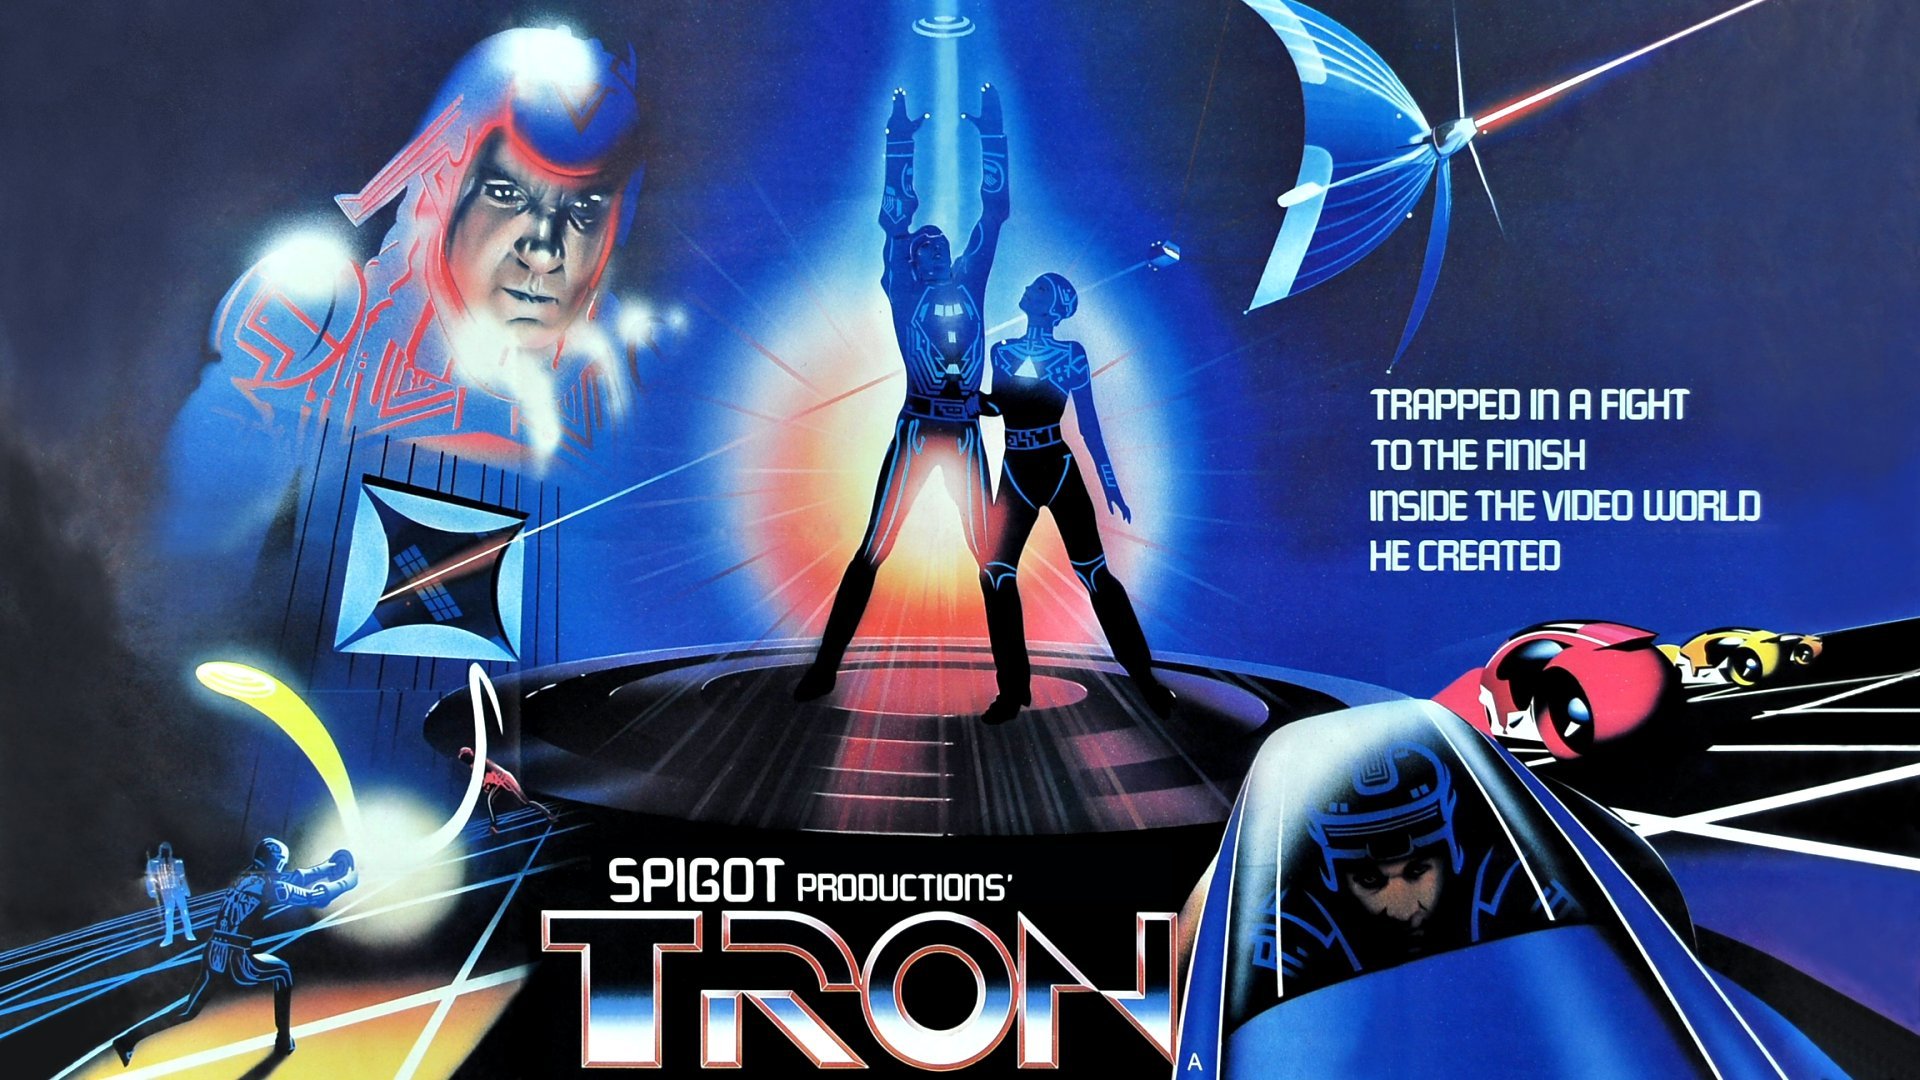 Tron 1982